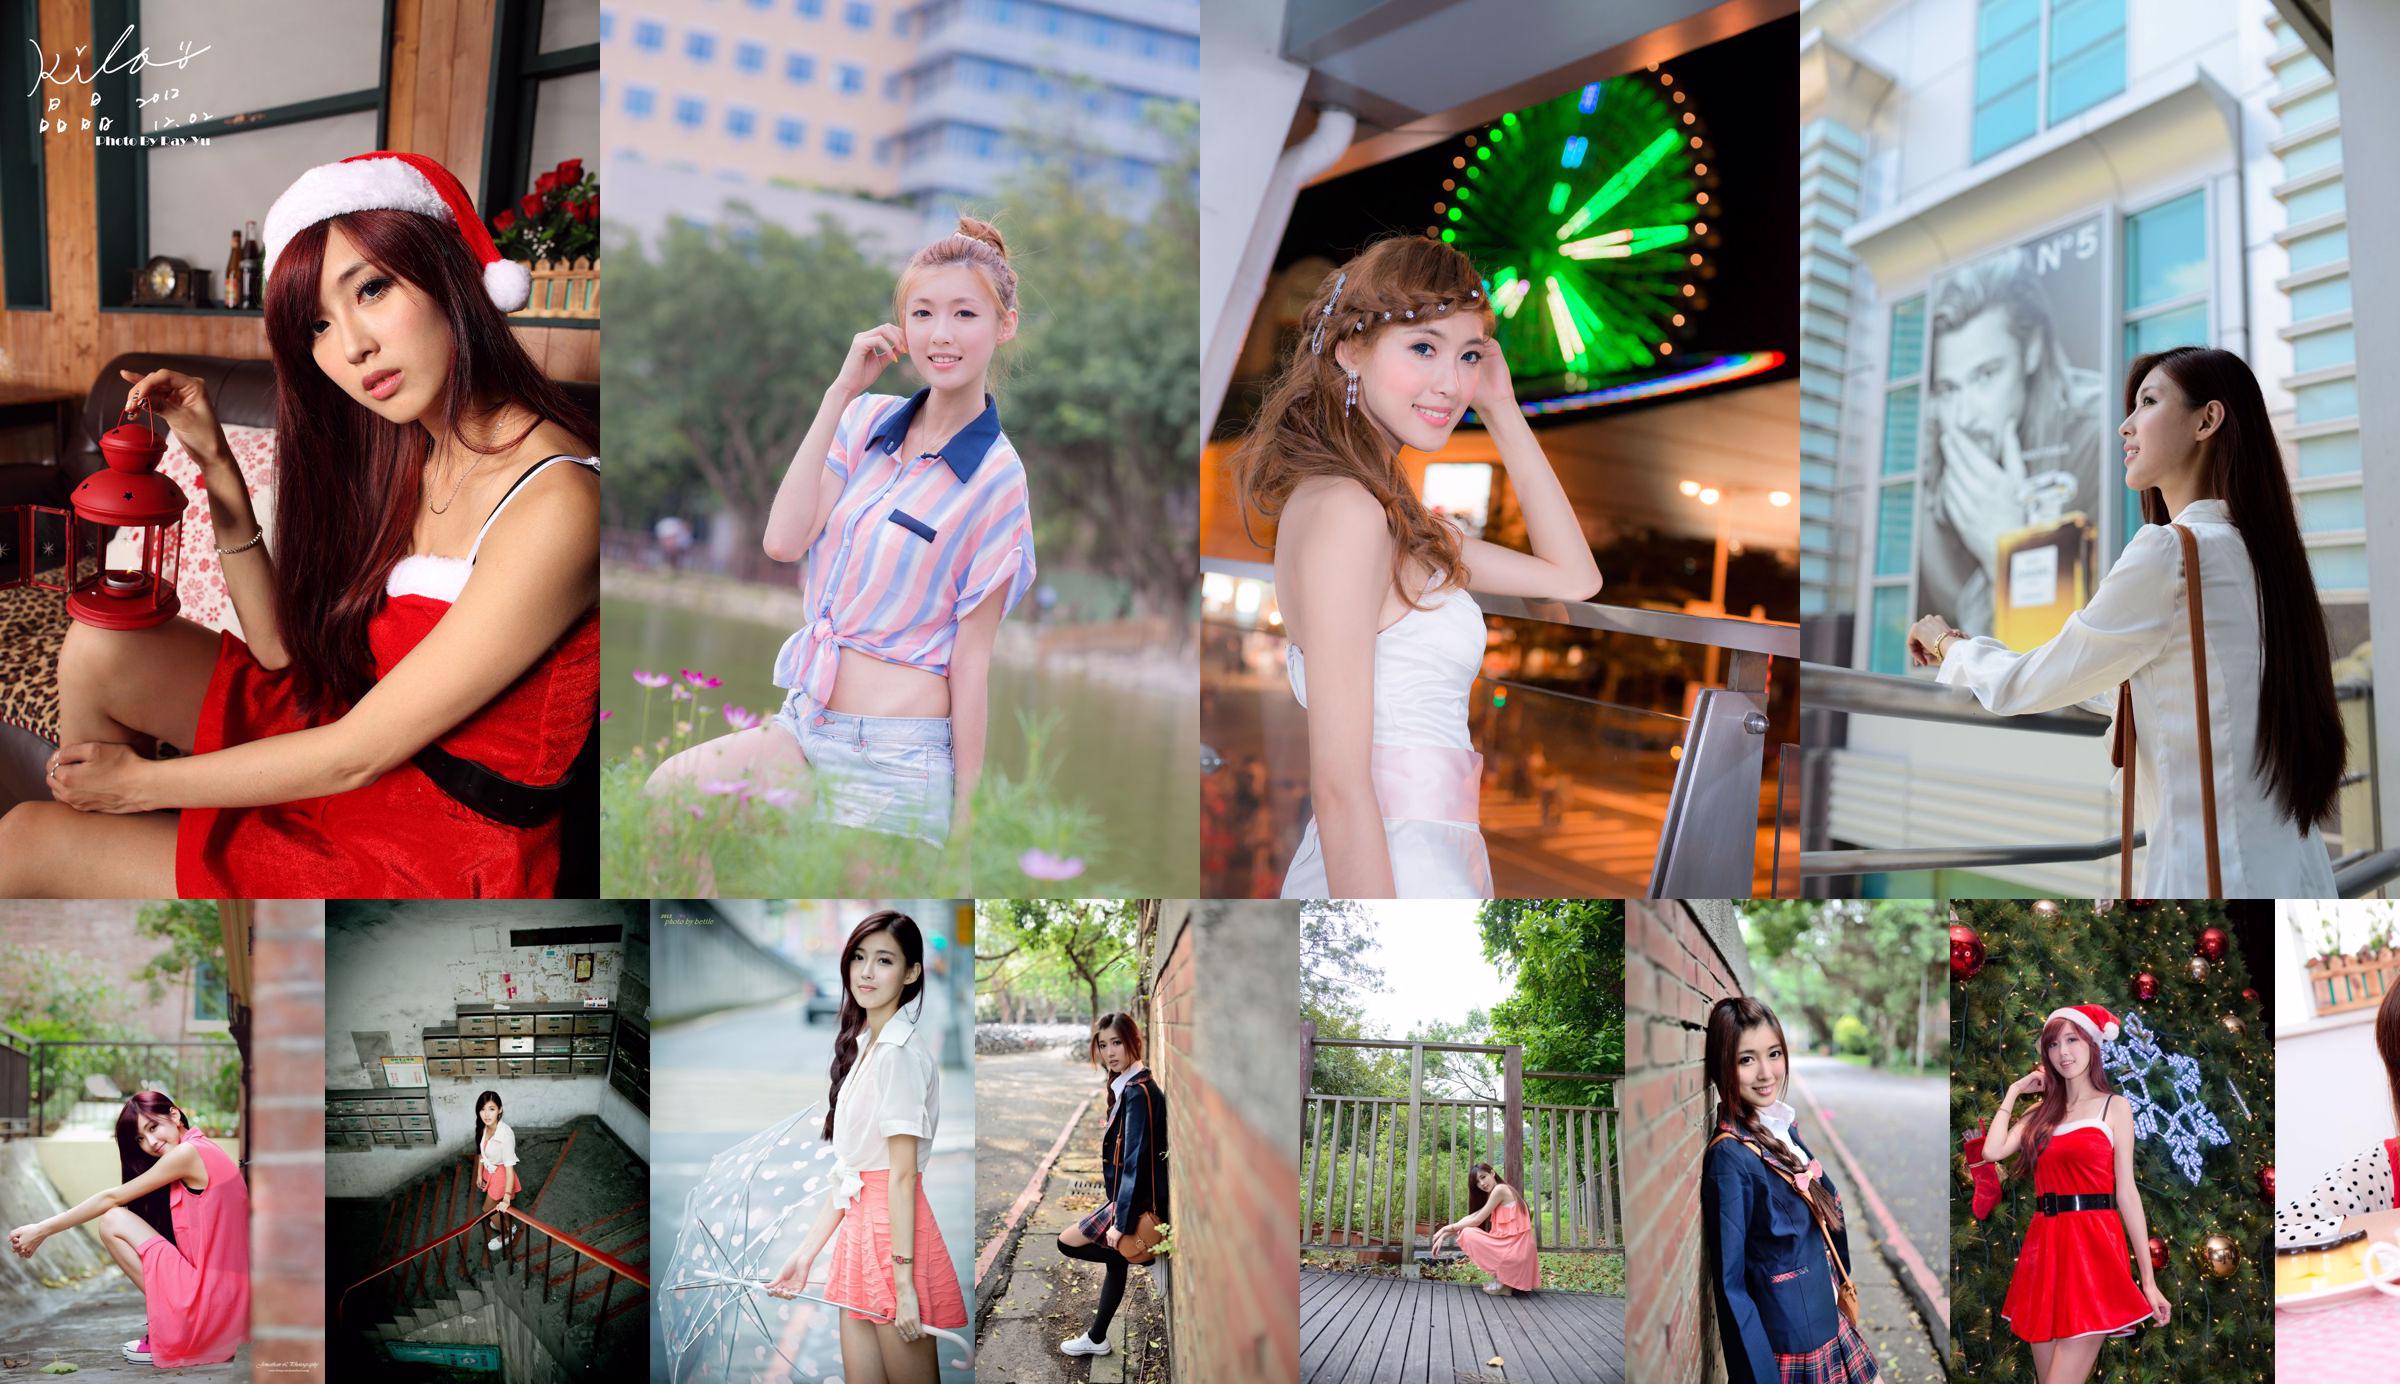 Liao Tingling / Kila Jingjing "Váy ngắn + Bốt chụp trên phố" No.52ccdf Trang 1